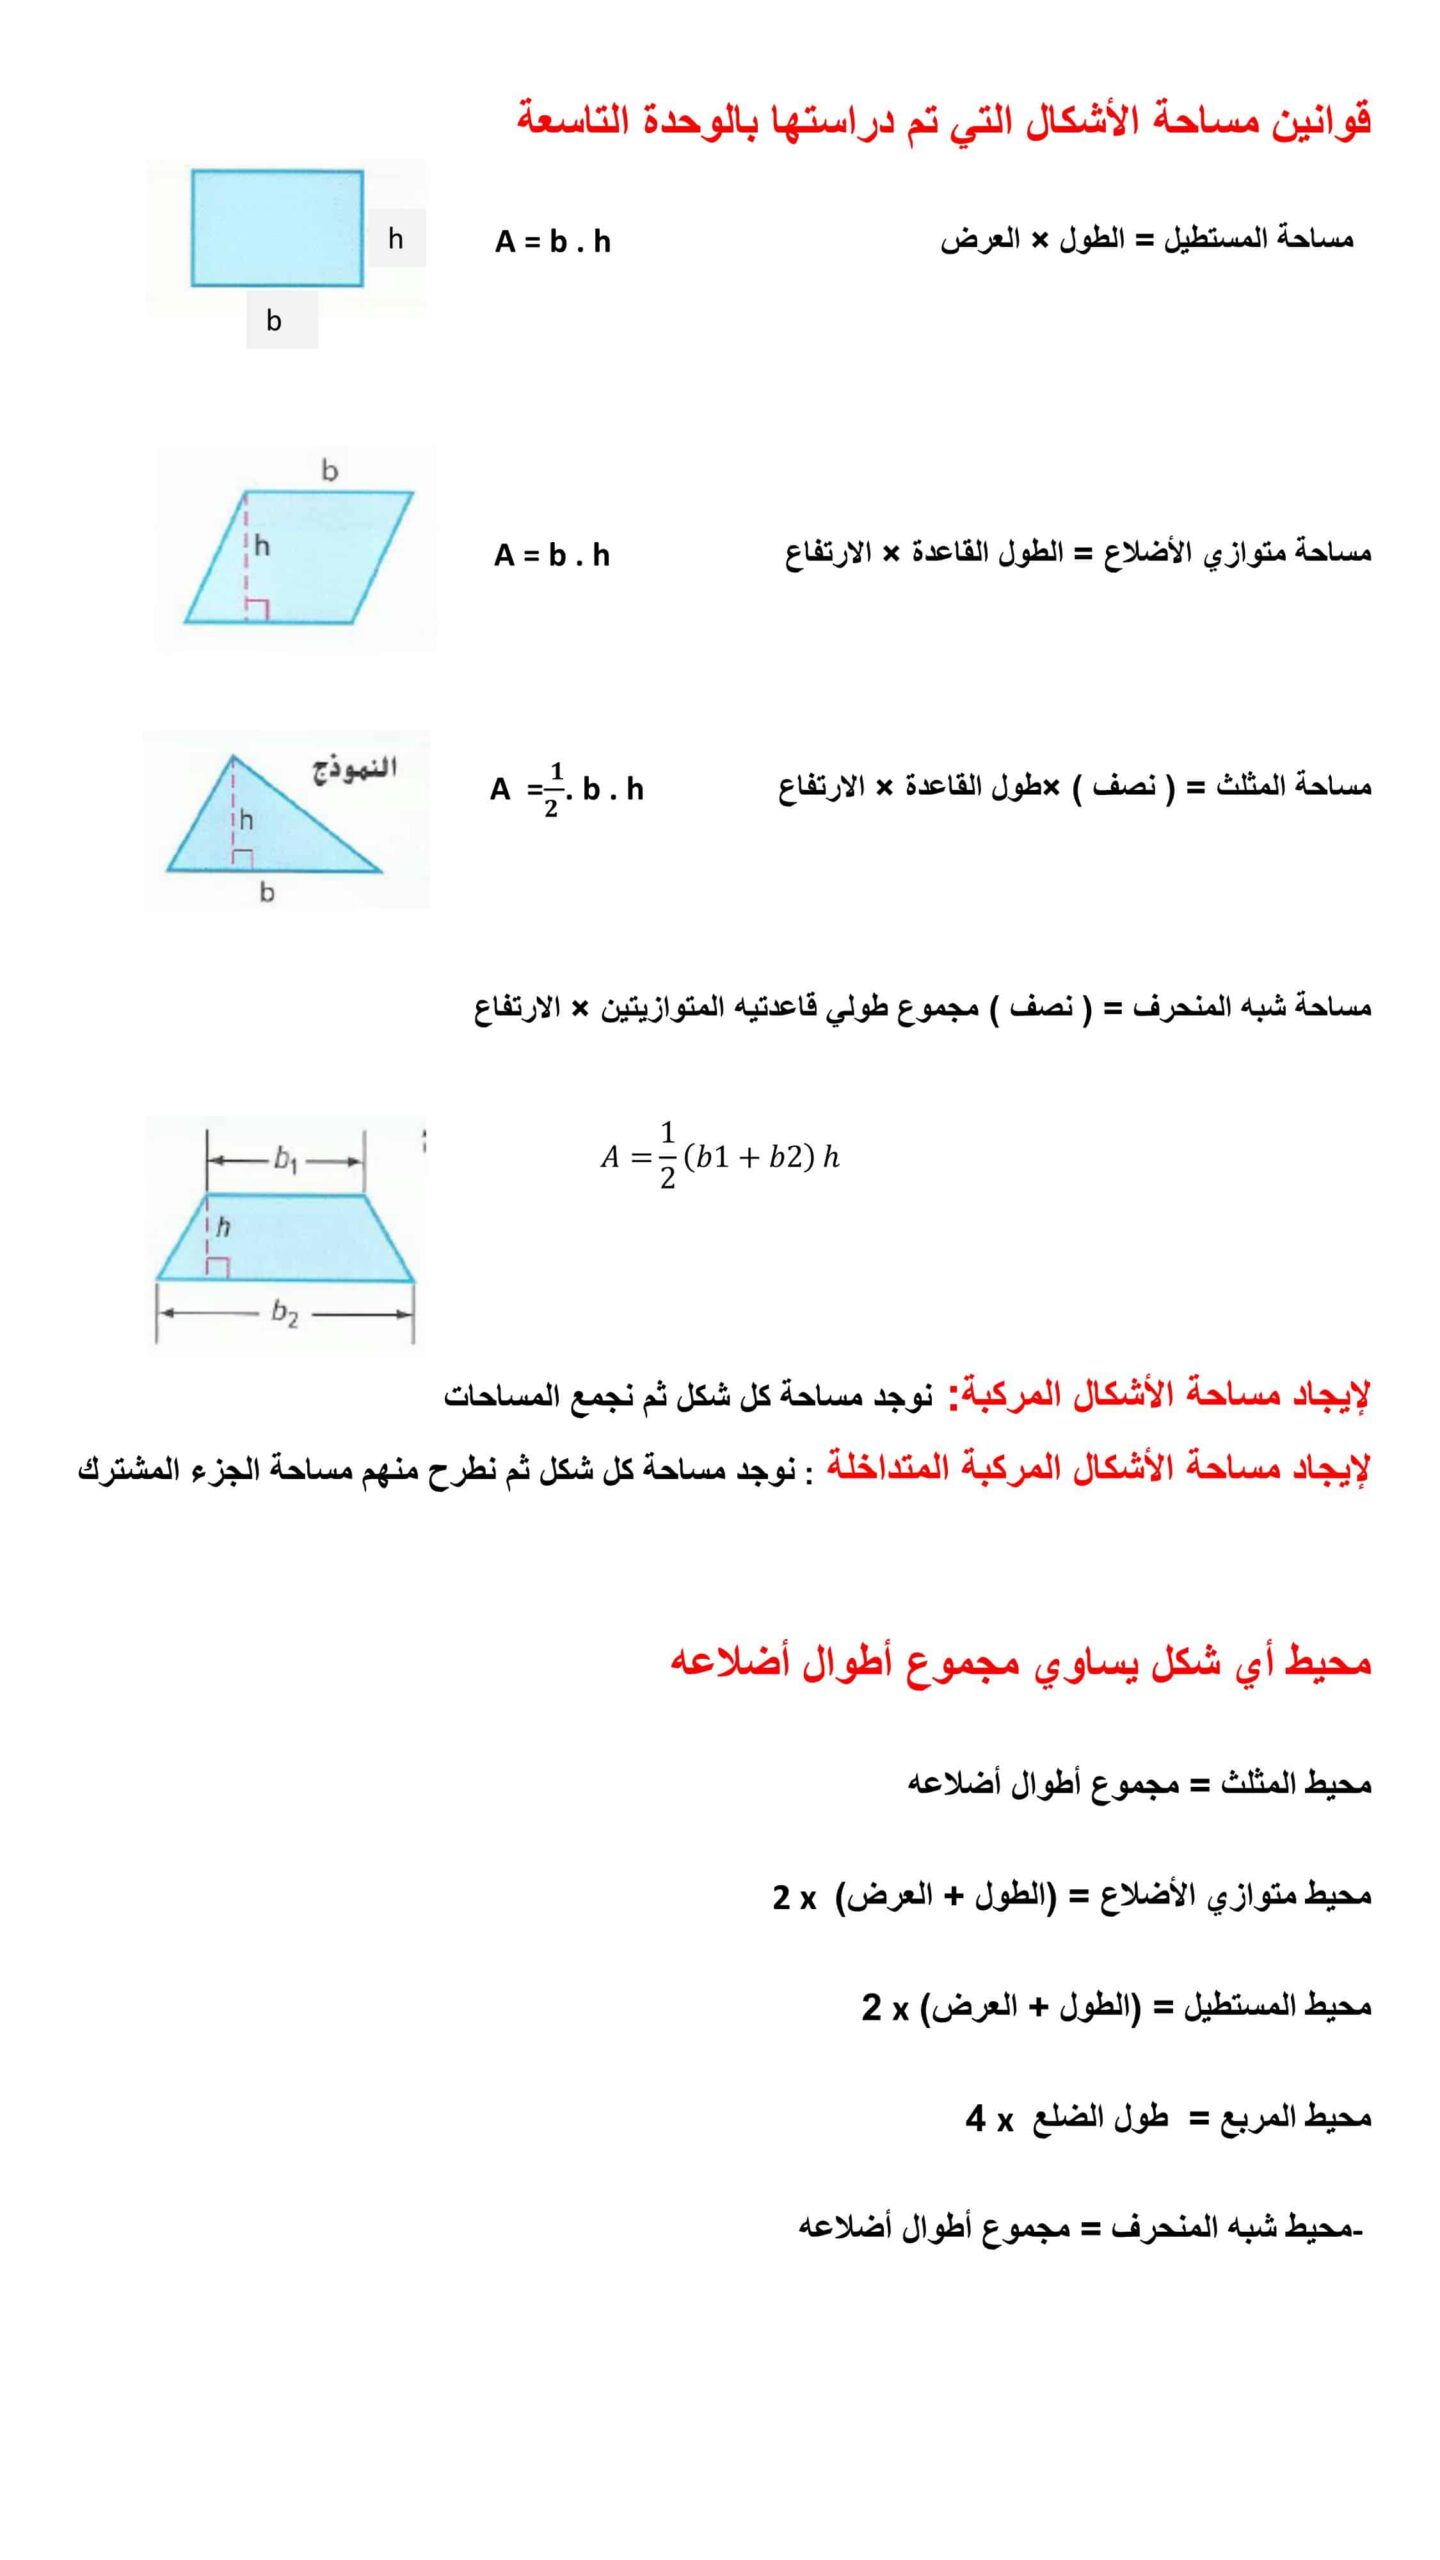 قوانين مساحة الأشكال الوحدة التاسعة الرياضيات المتكاملة الصف السادس 